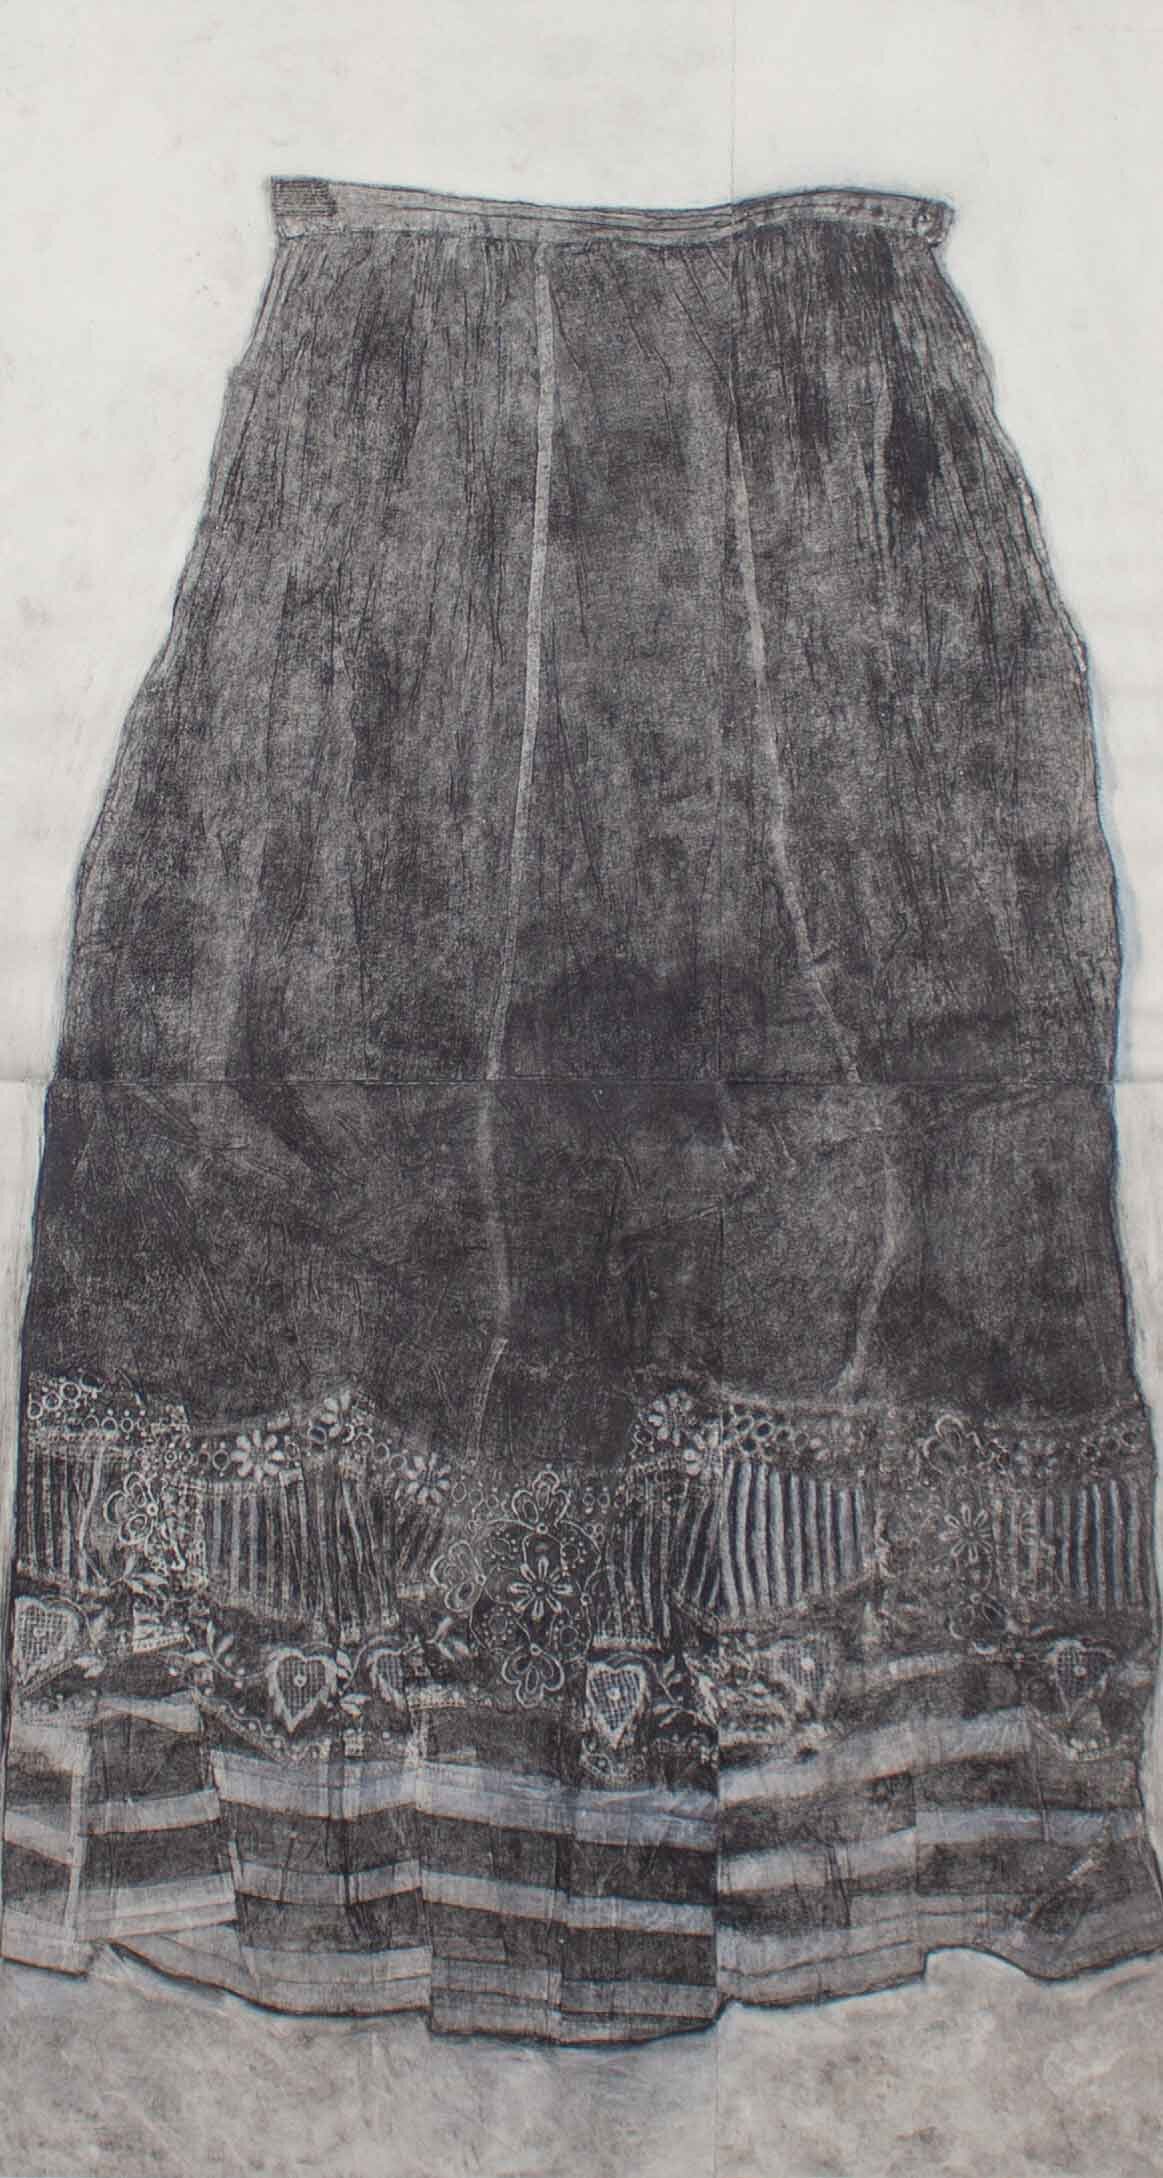 Frida's Skirt